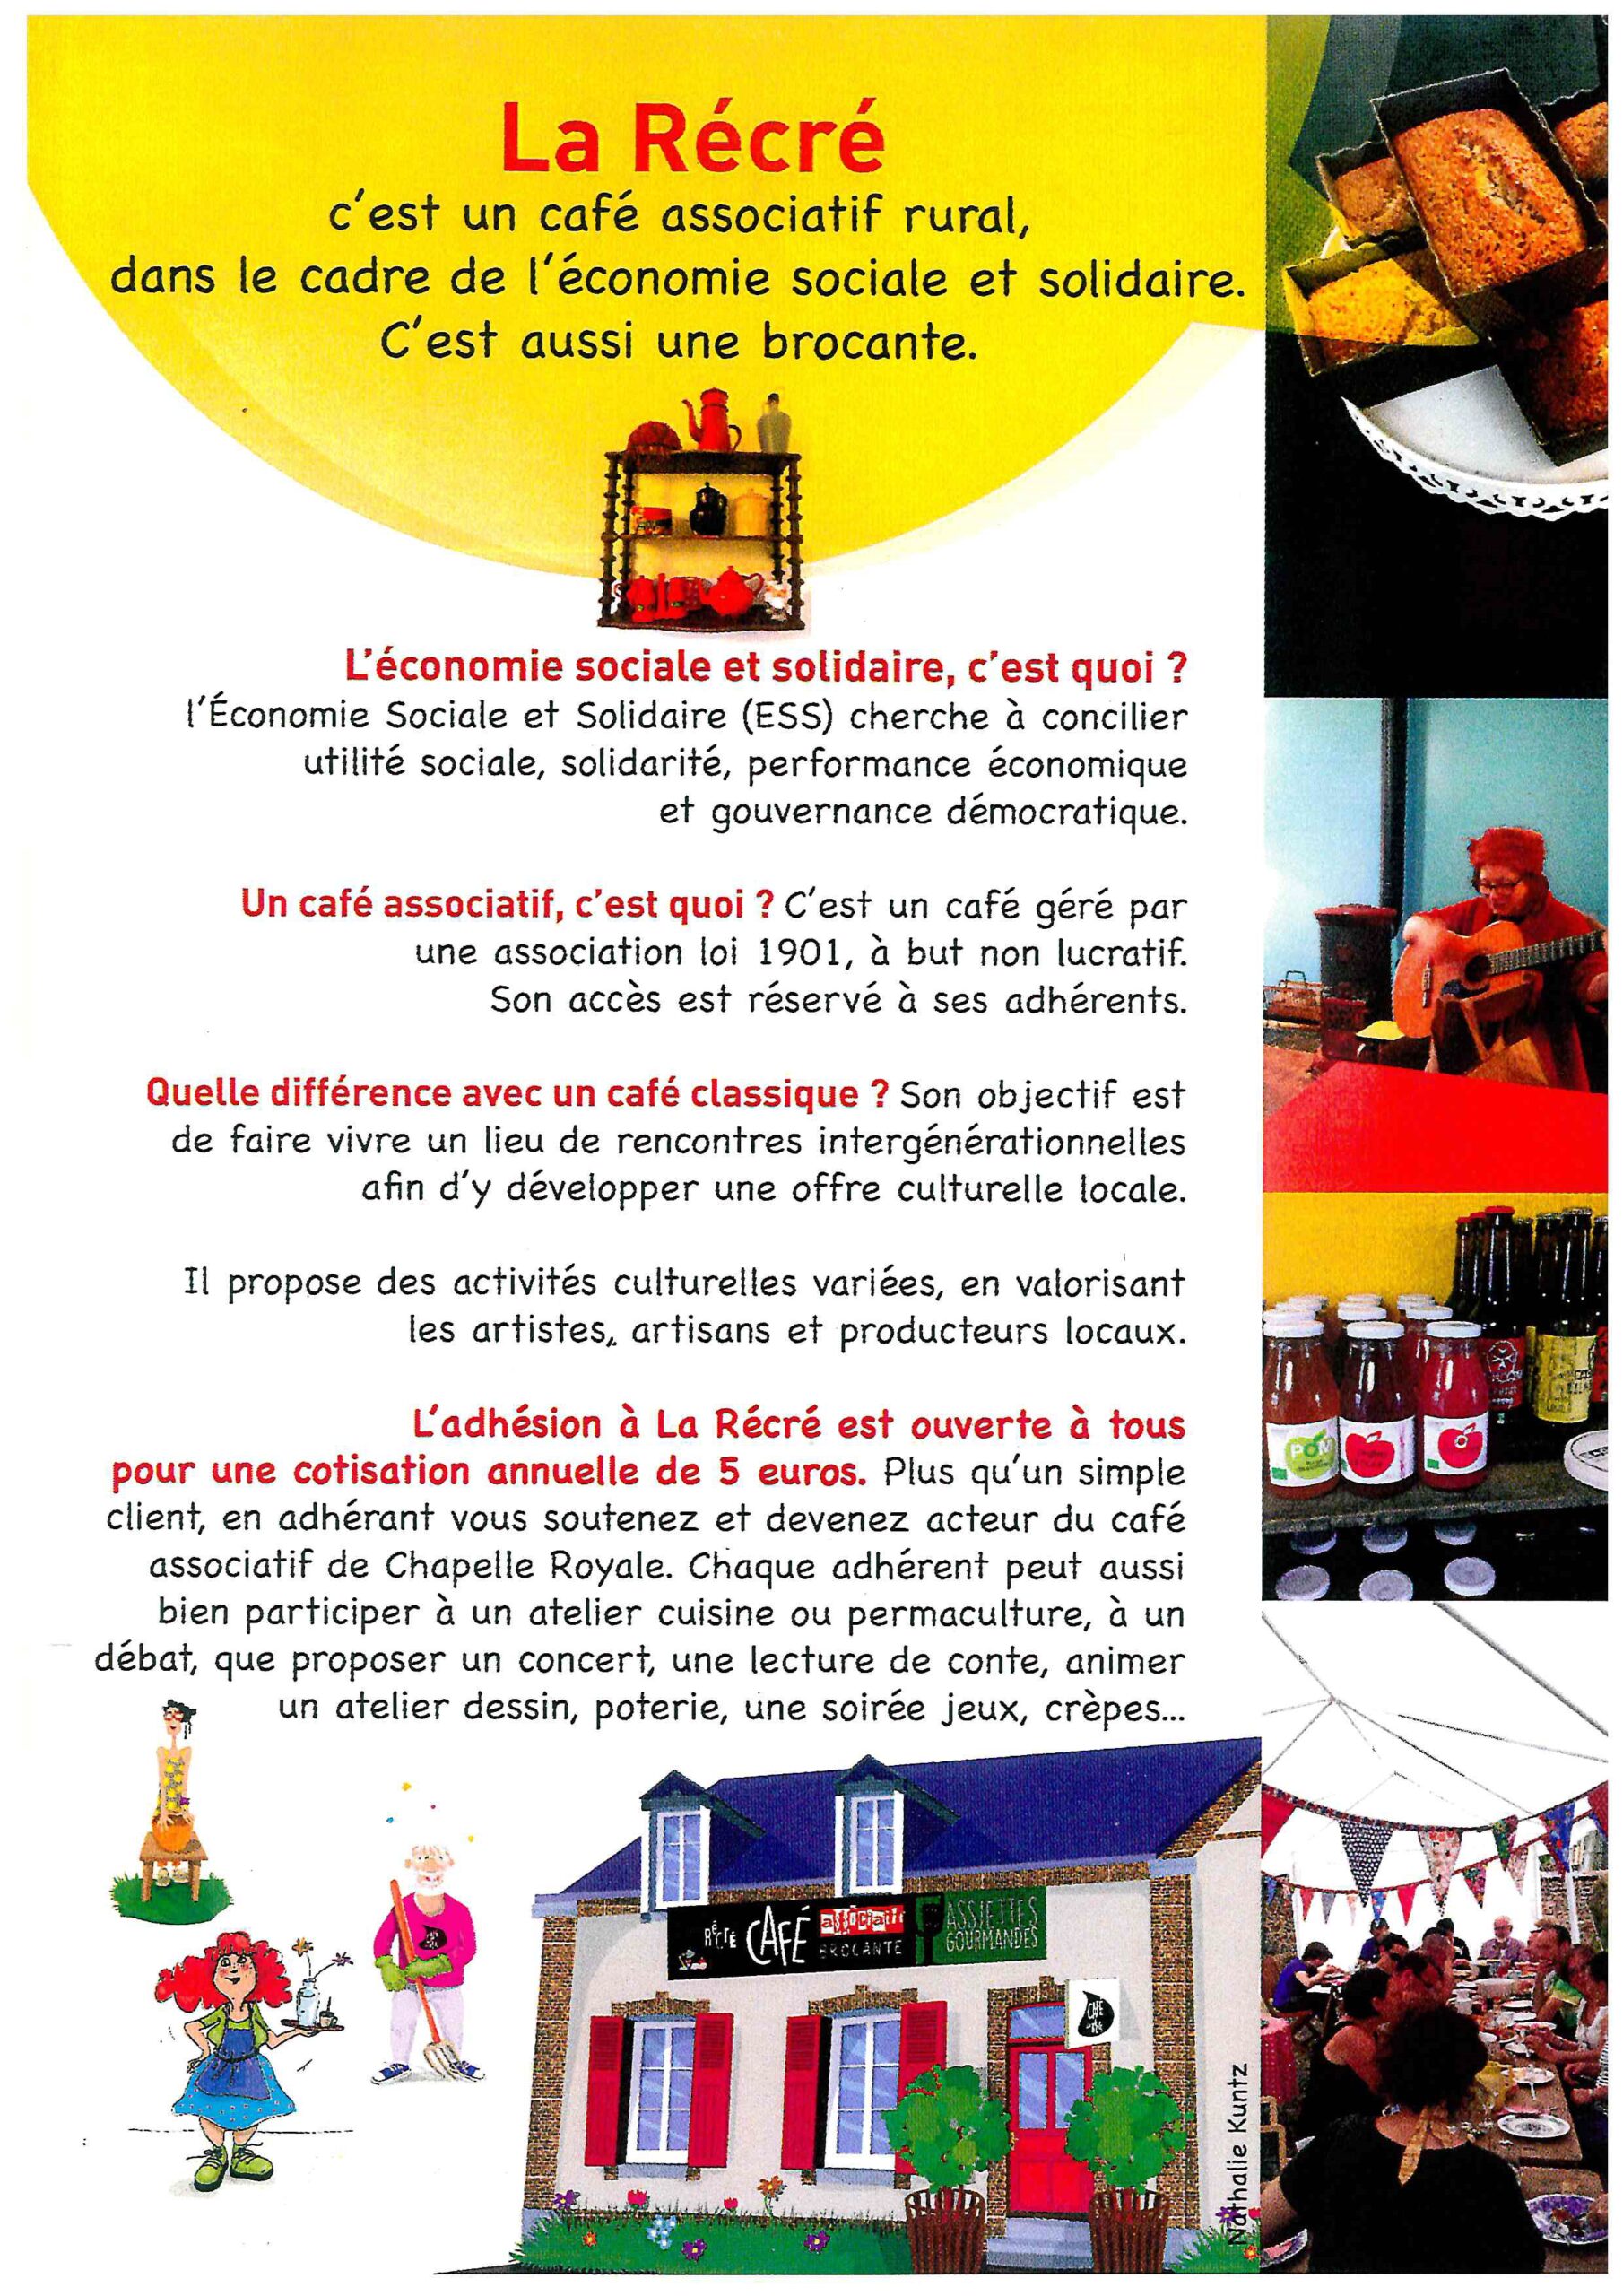 Affiche du Café Associatif La Récré qui promeut la culture locale en faisant découvrir des artistes, des artisans et des producteurs locaux à de Chapelle Royale en Eure et Loir dans le Perche (28)...